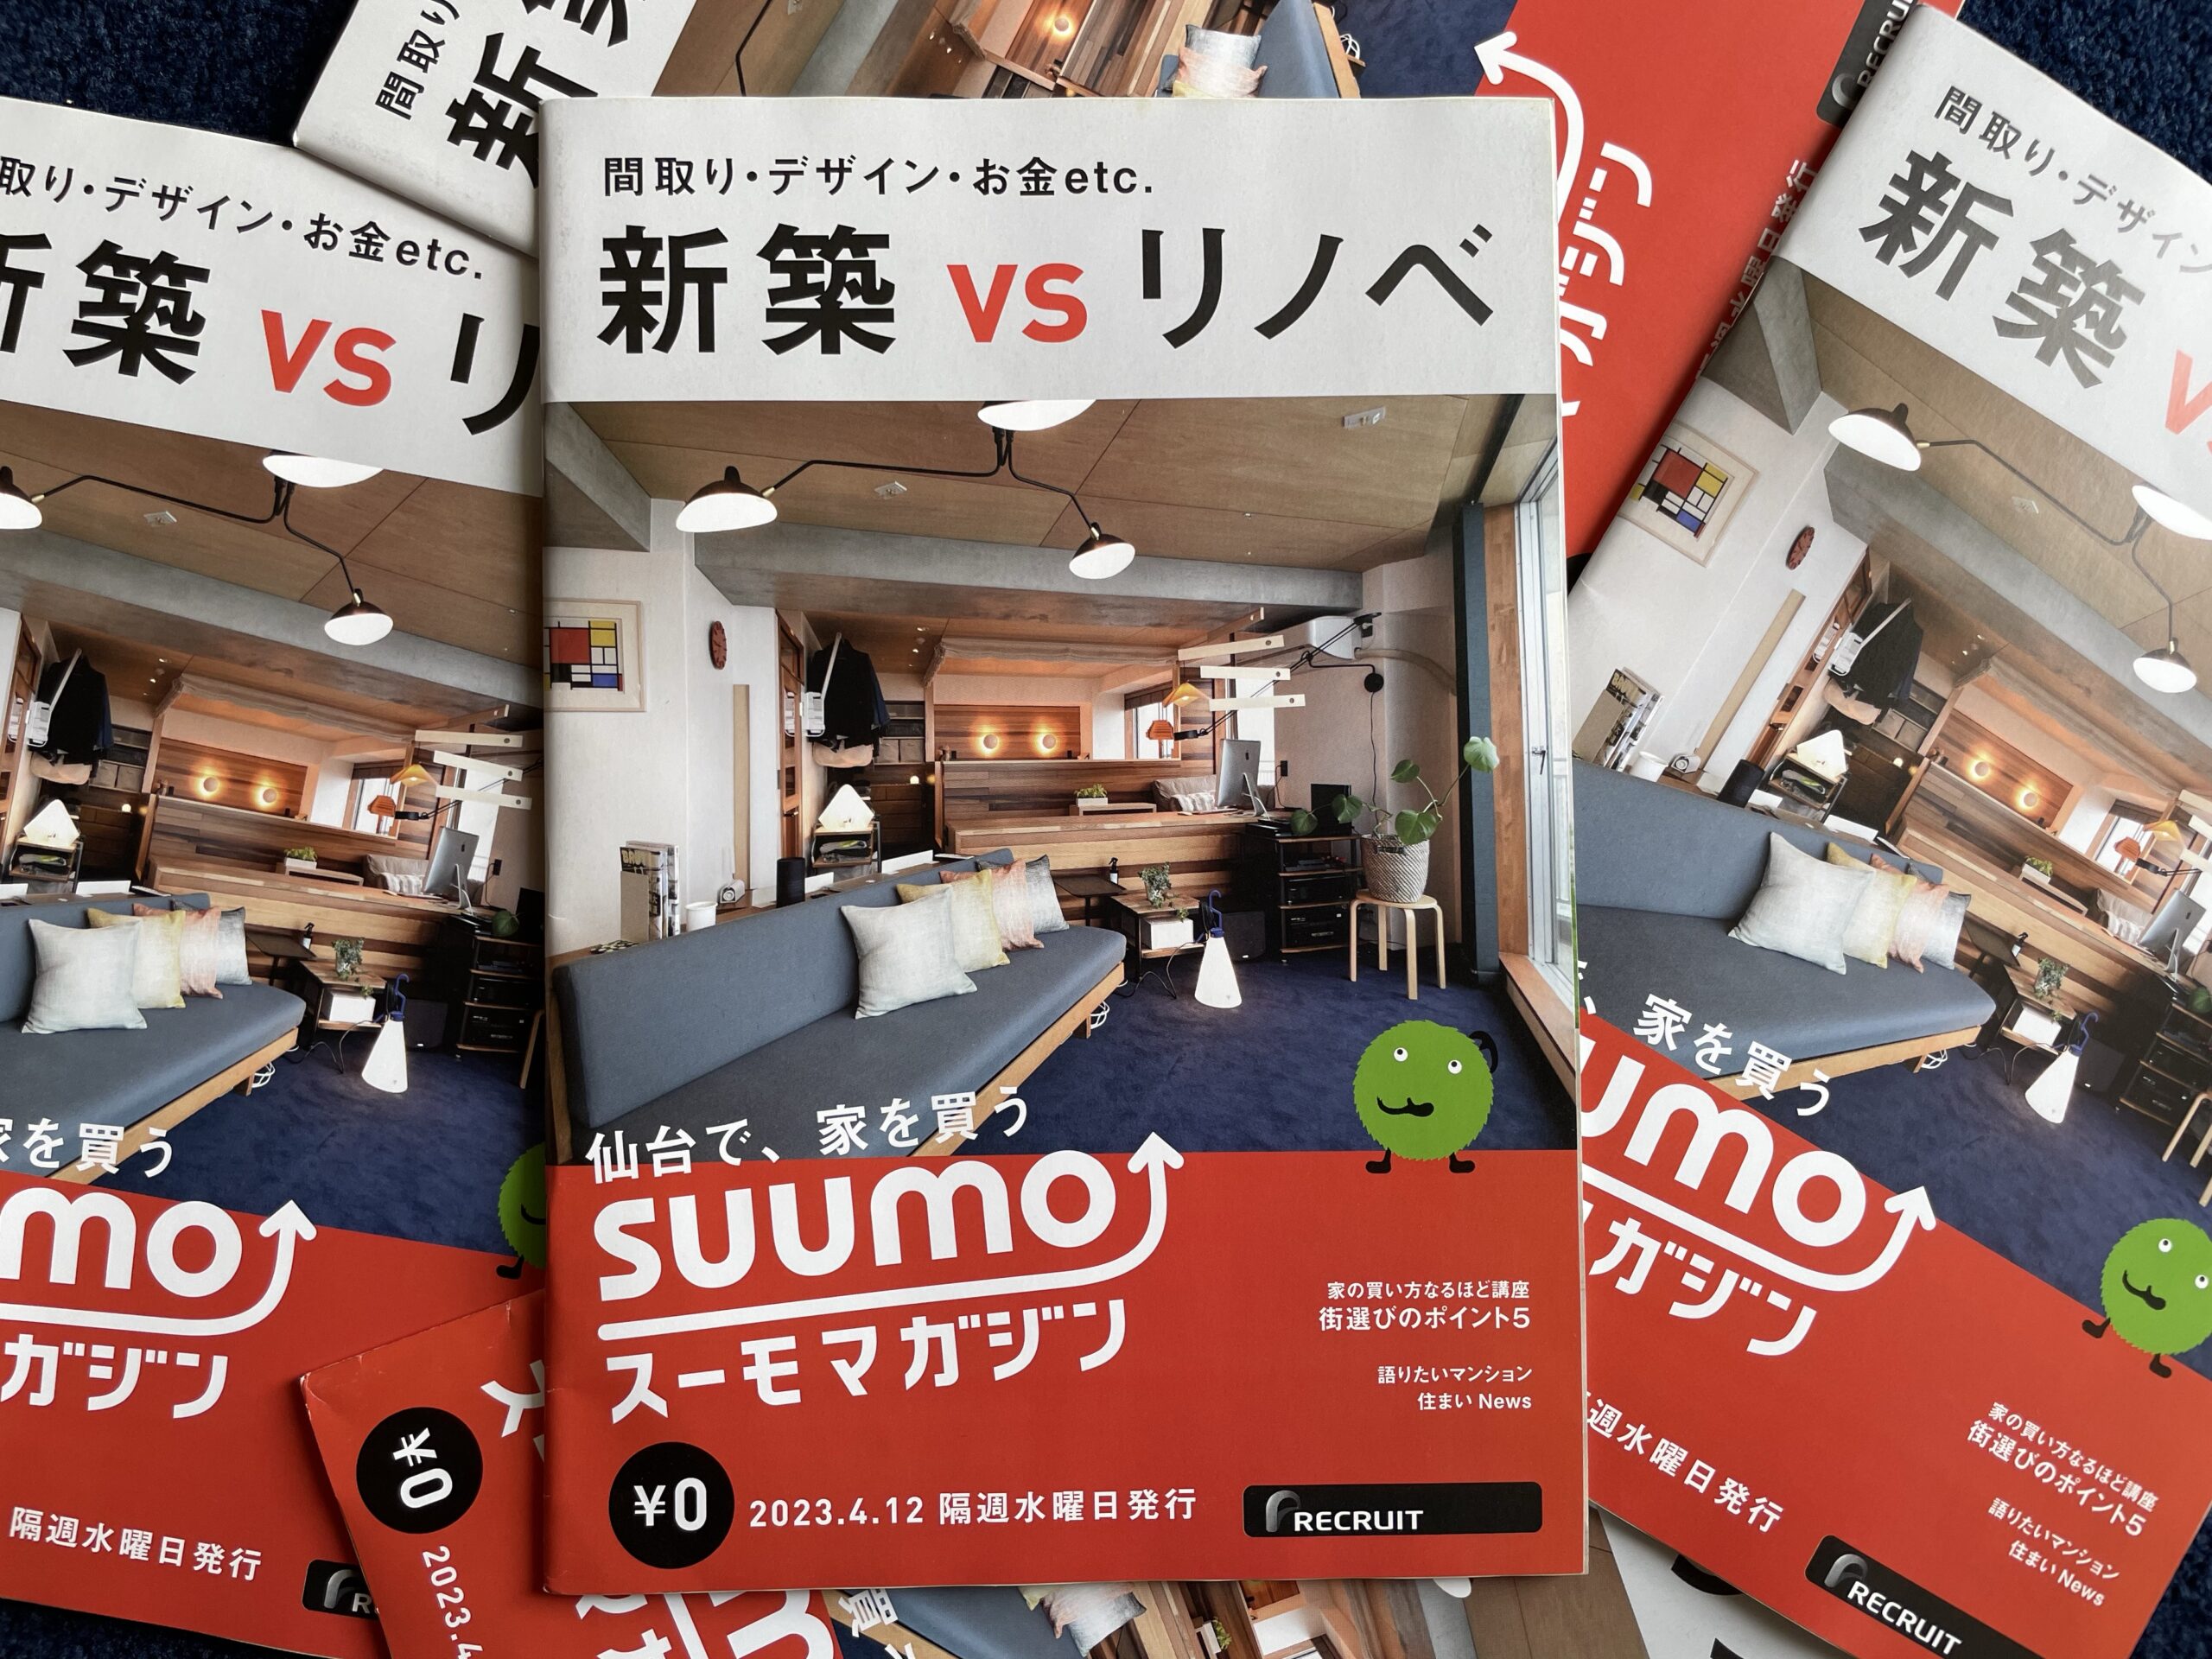 【SUUMO スーモマガジン】2023年4月12日号の表紙に選ばれました。